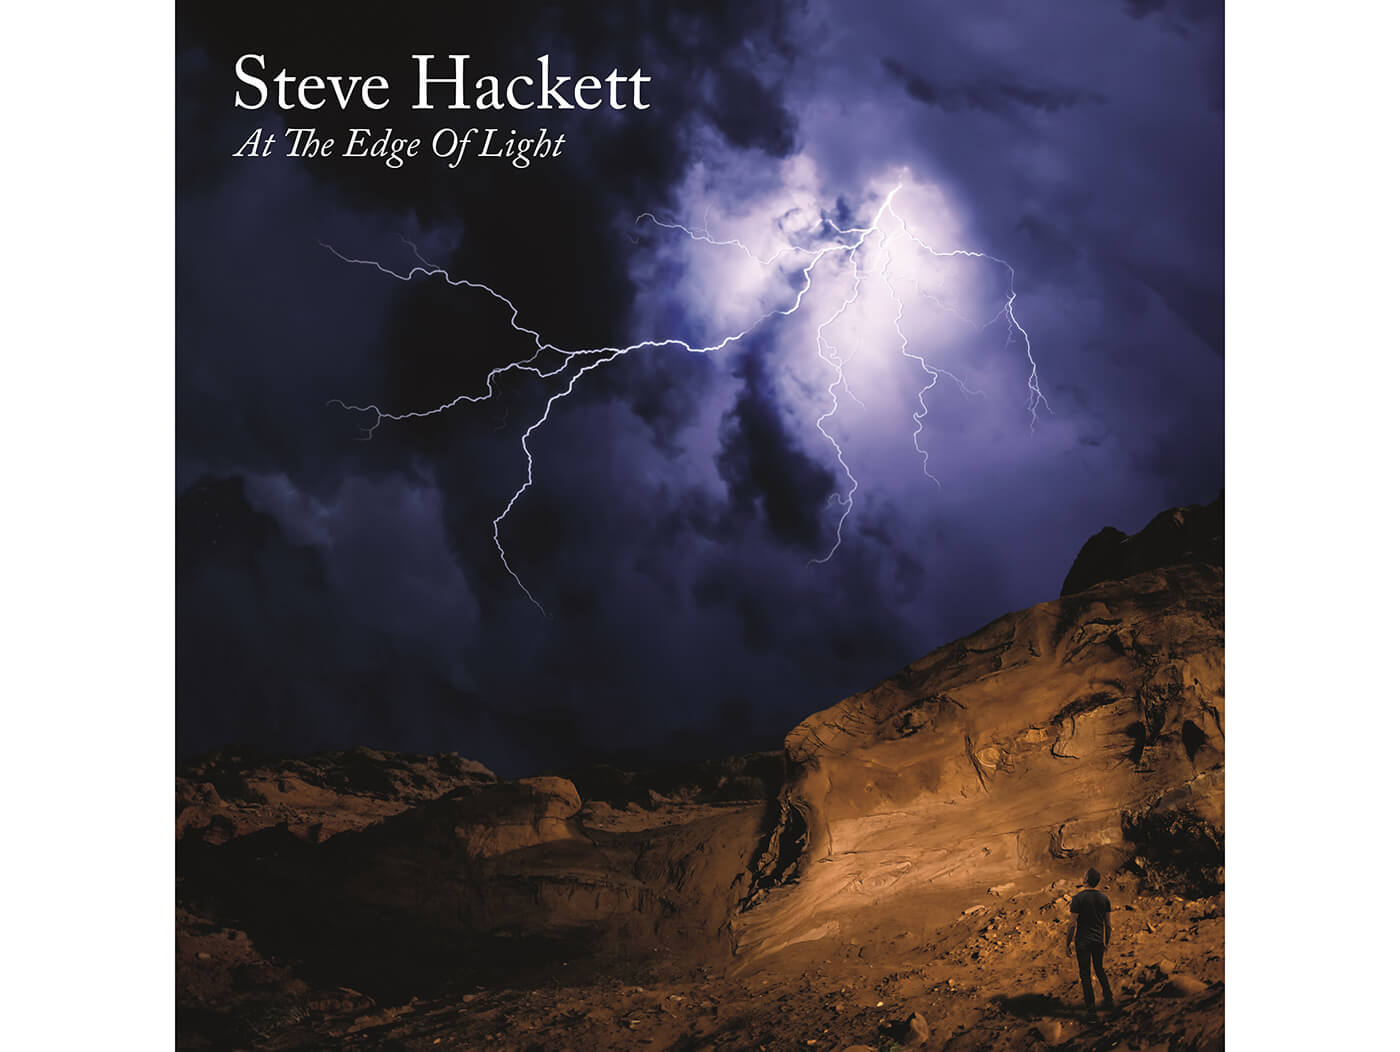 史蒂夫·哈克特在专辑封面的边缘